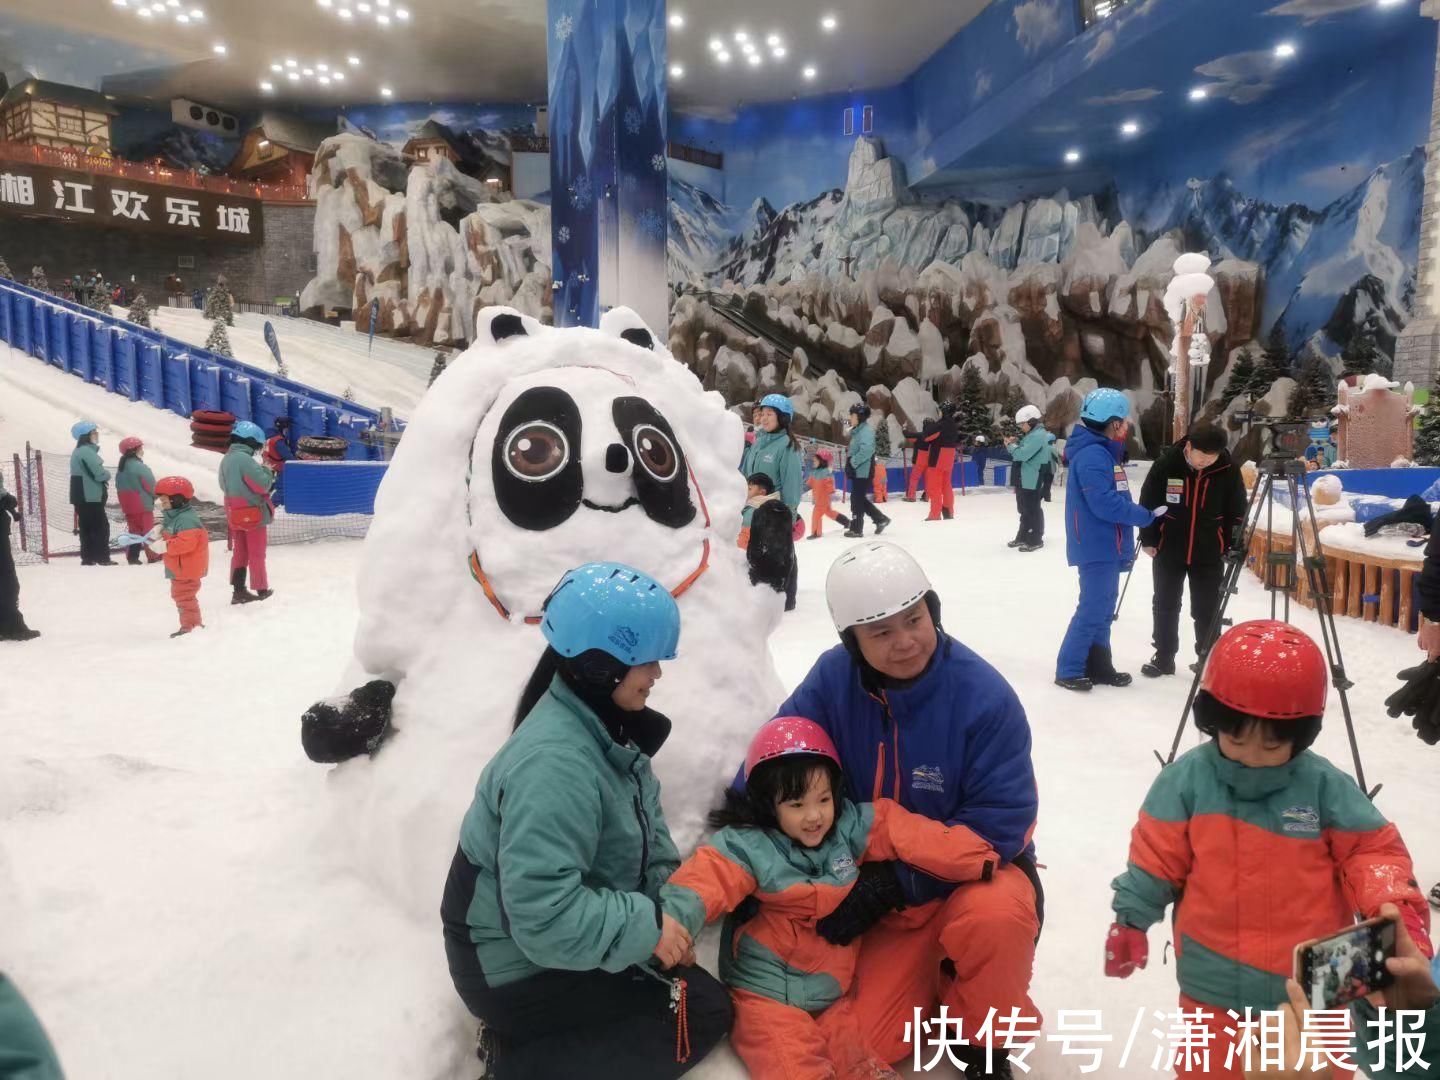 何彦|游客在欢乐雪域自制2米高“冰墩墩”